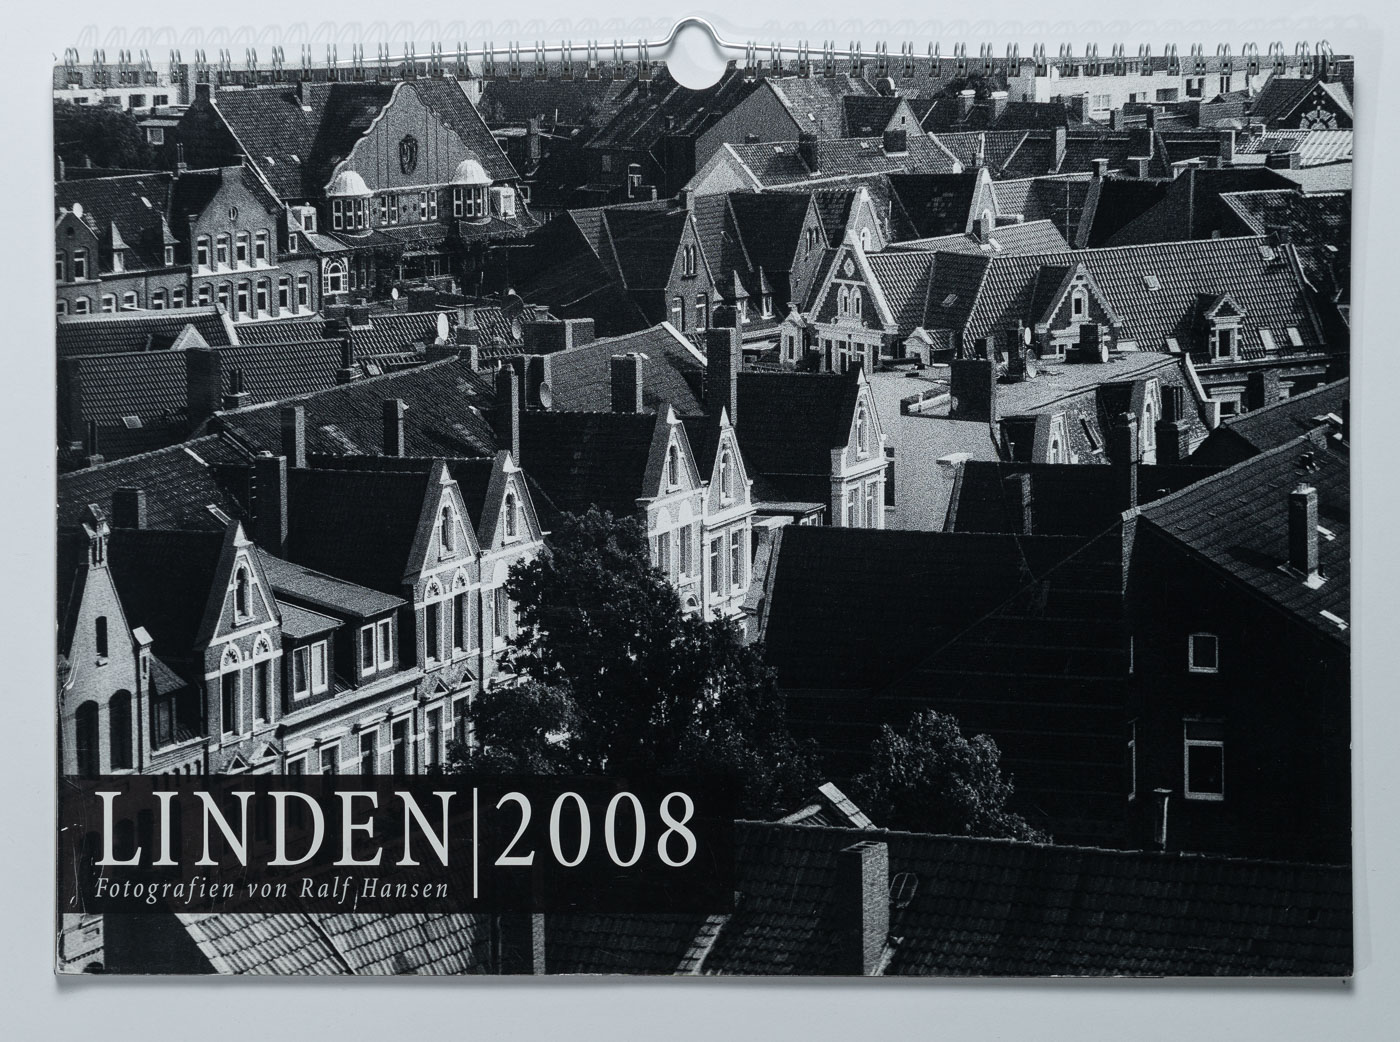 Lindenkalender LINDEN 2008